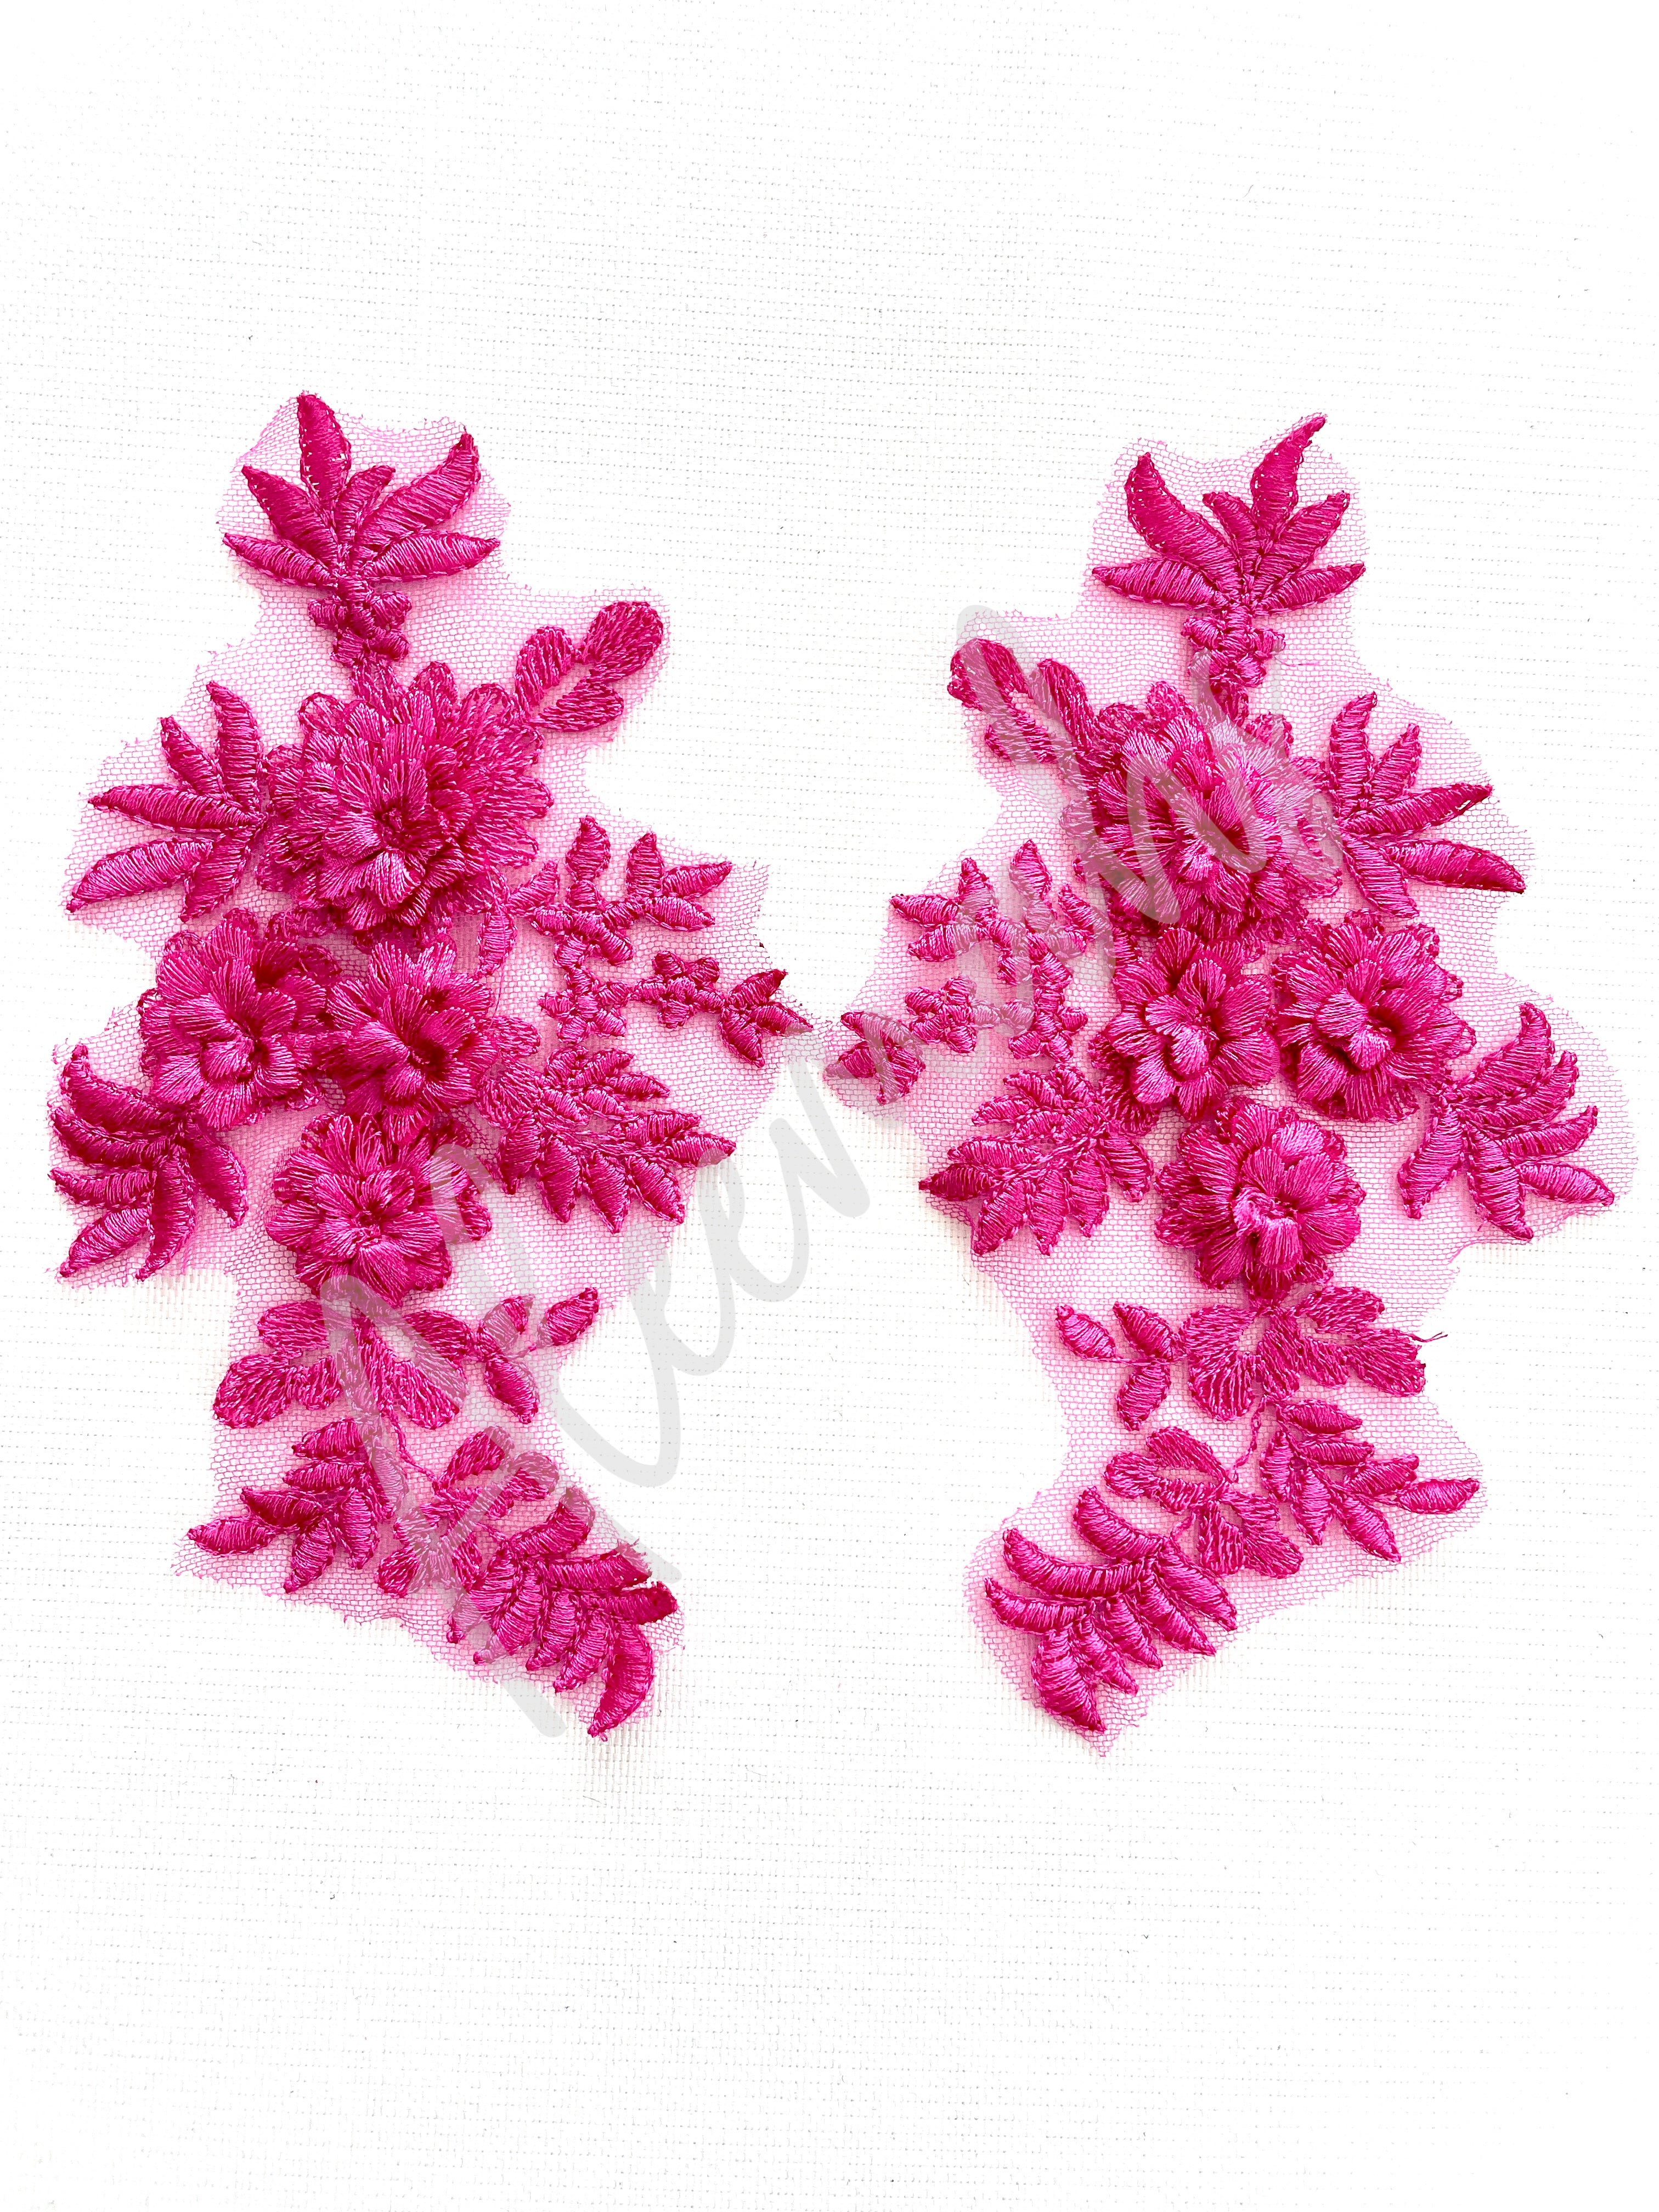 LA-033: 3D floral lace applique pair: Fuchsia